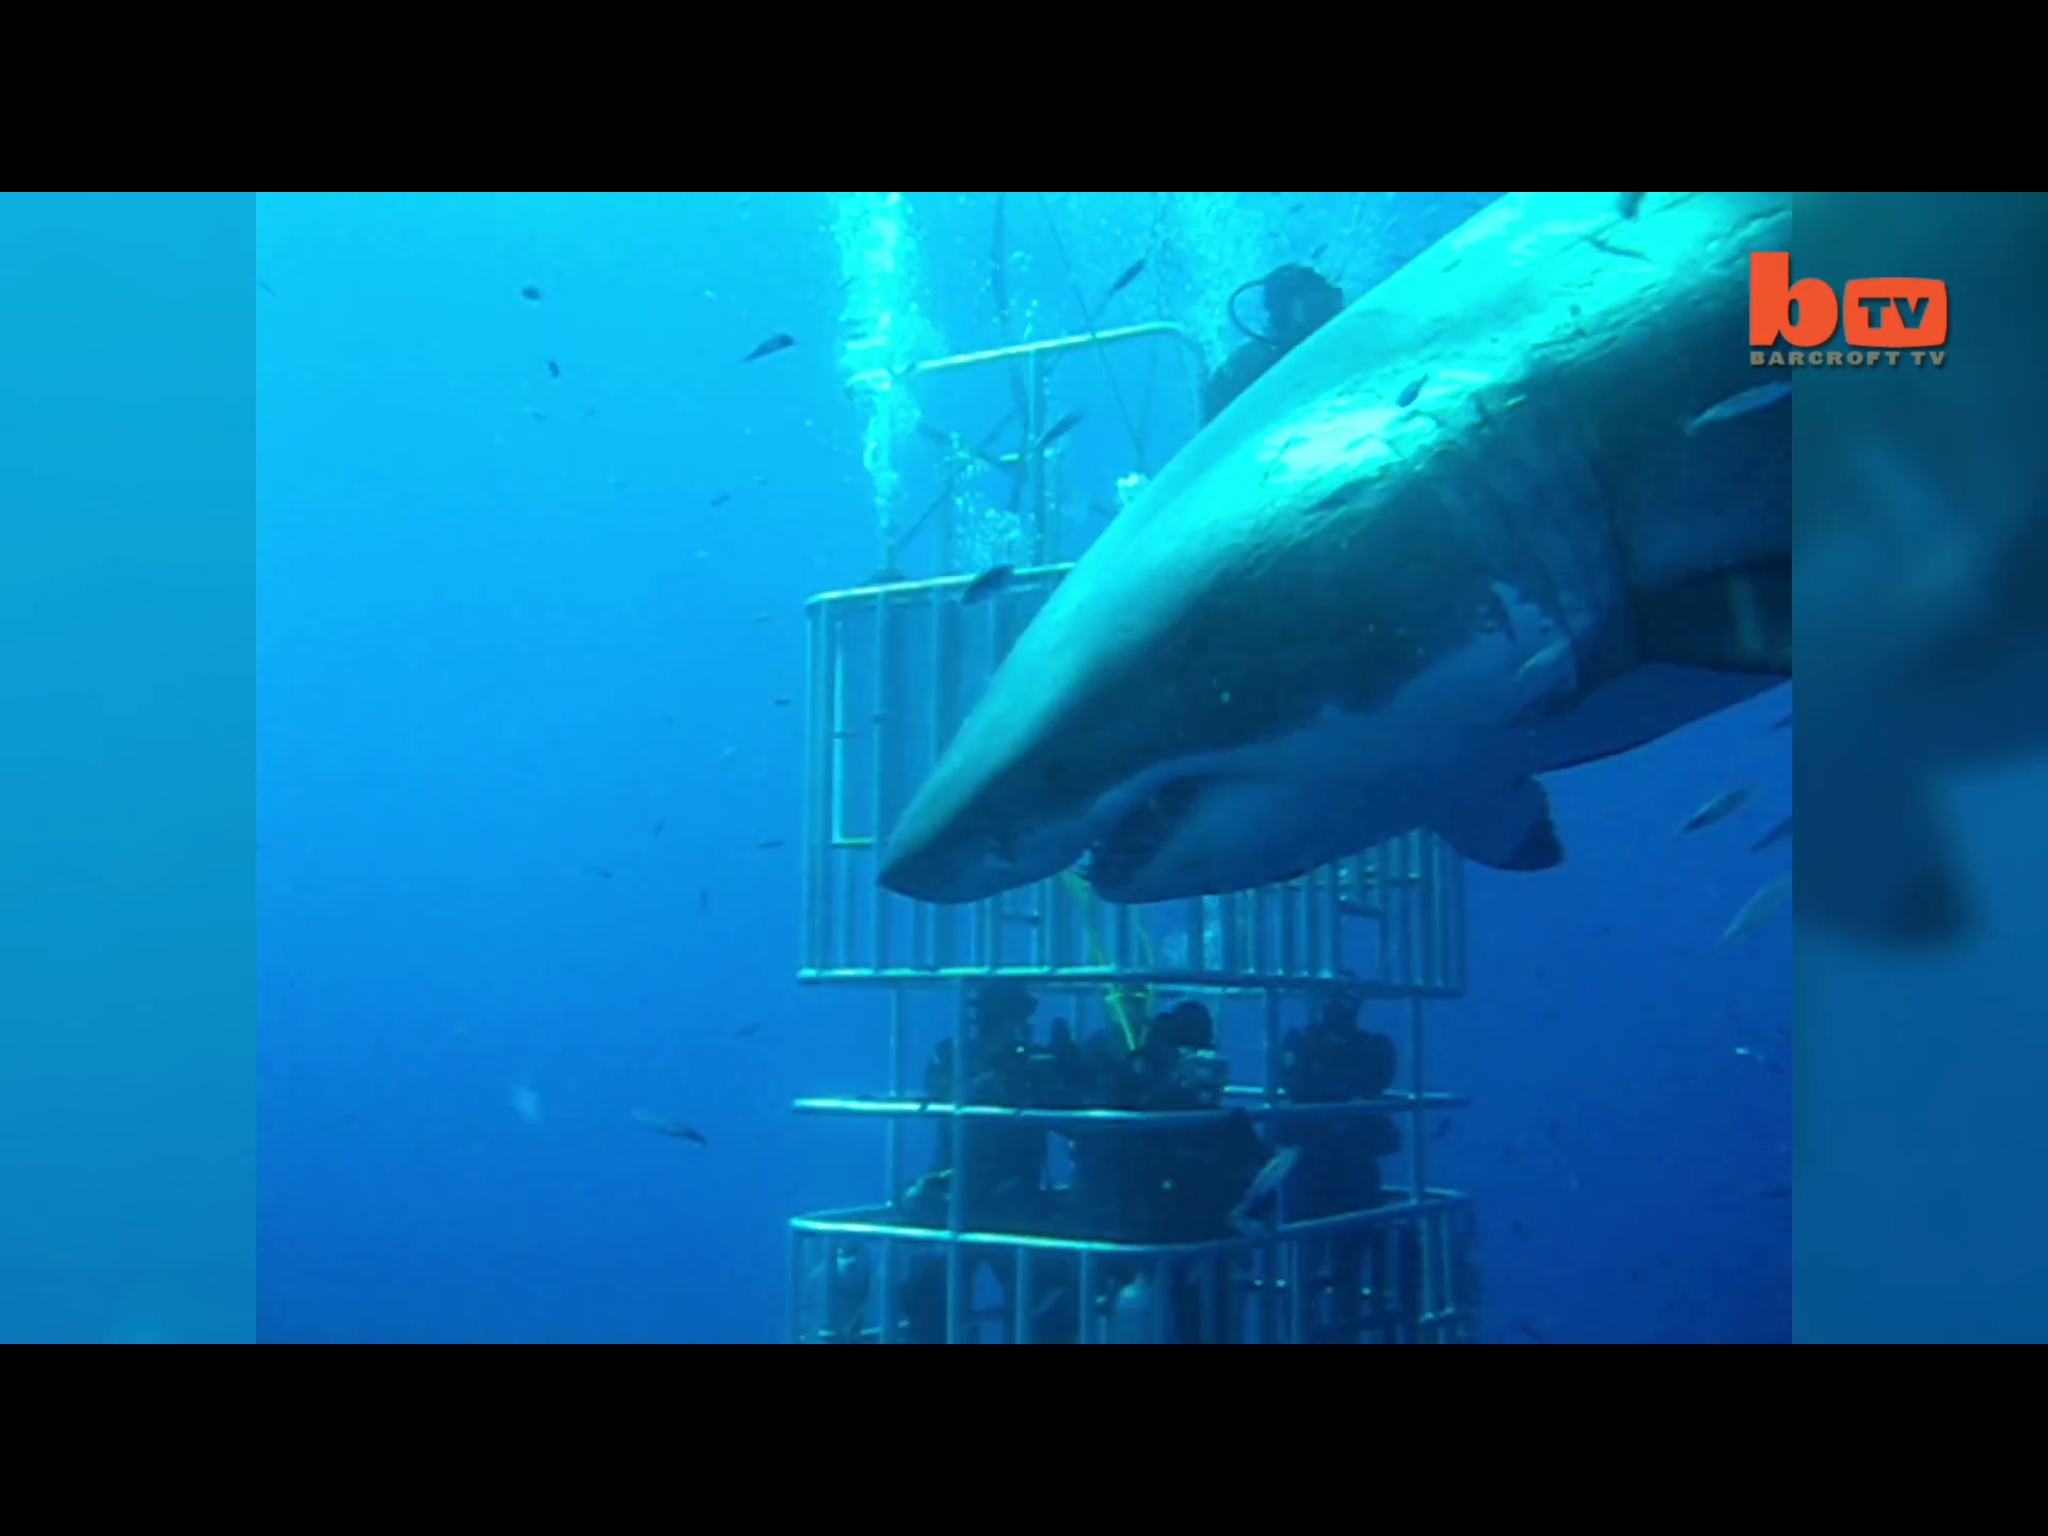 De grootste witte haai ooit gefilmd